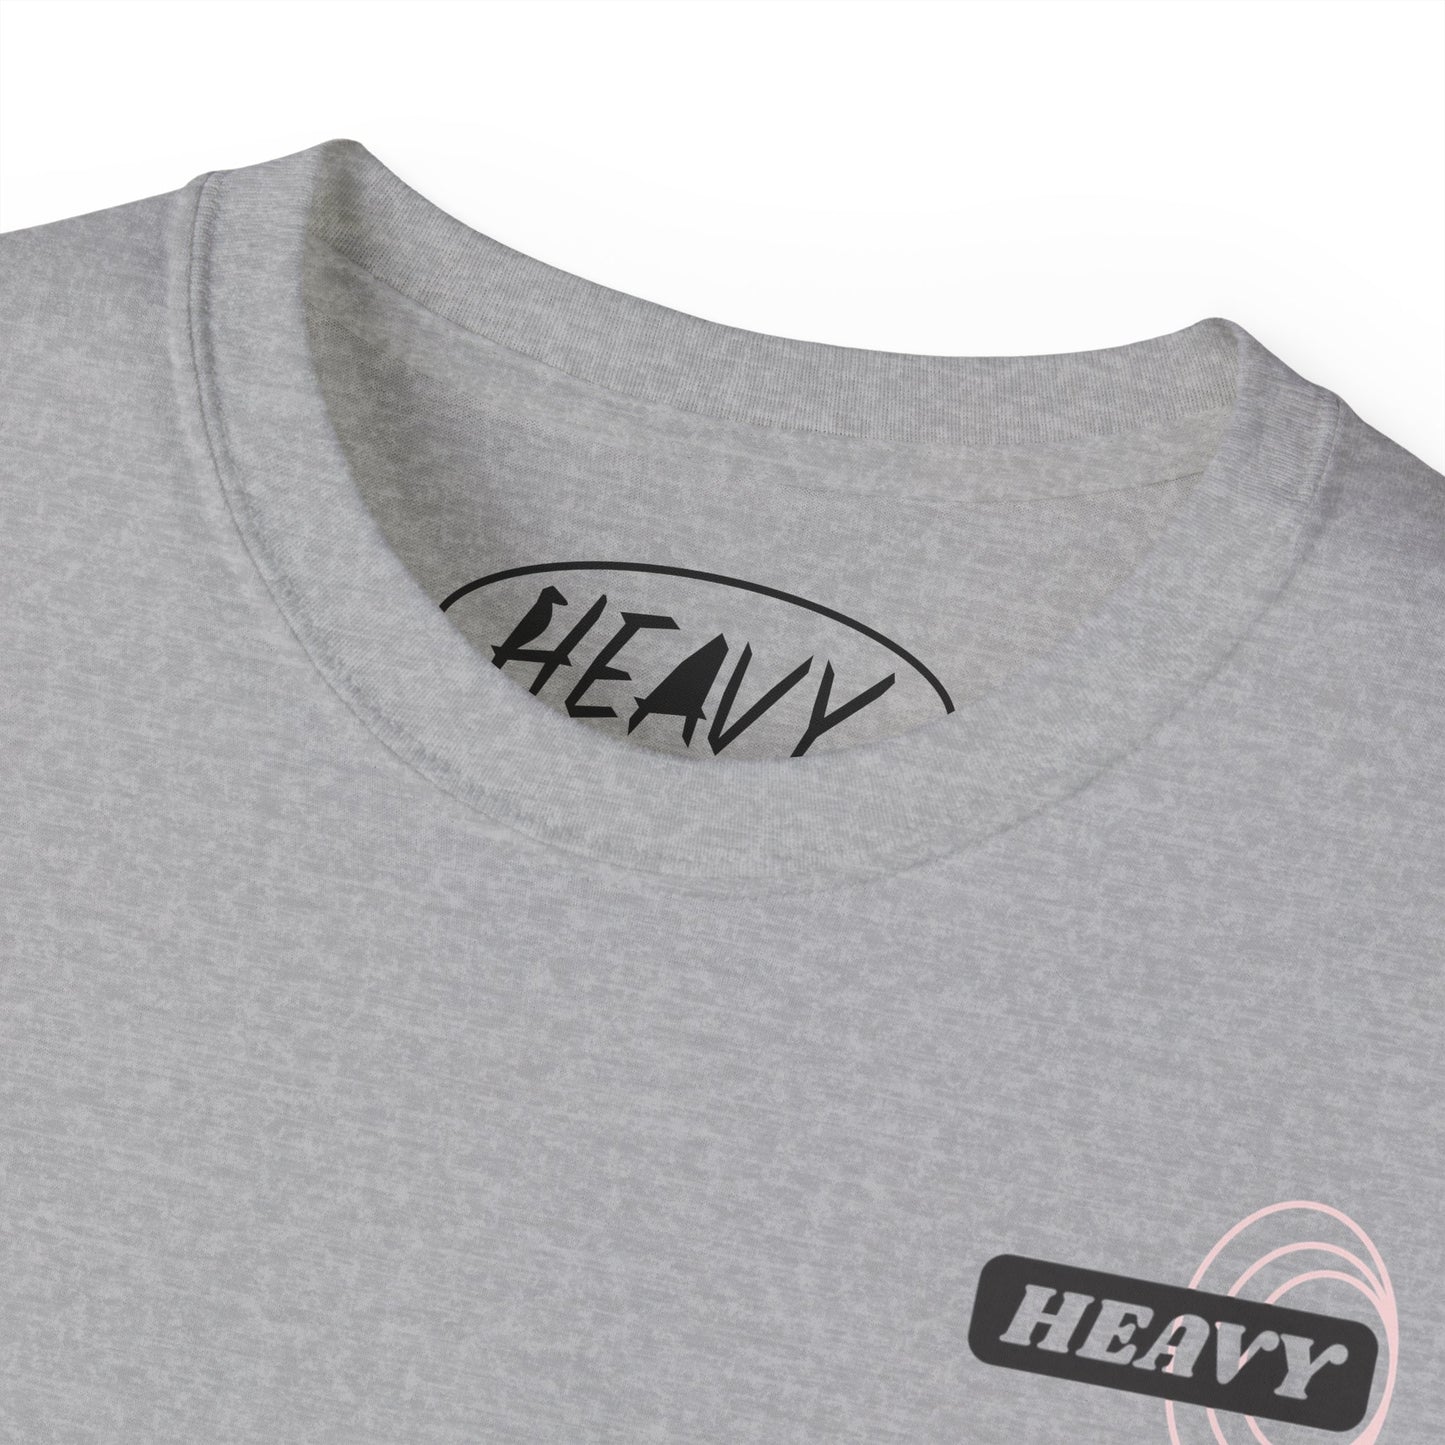 Heavy Limited May - Grey